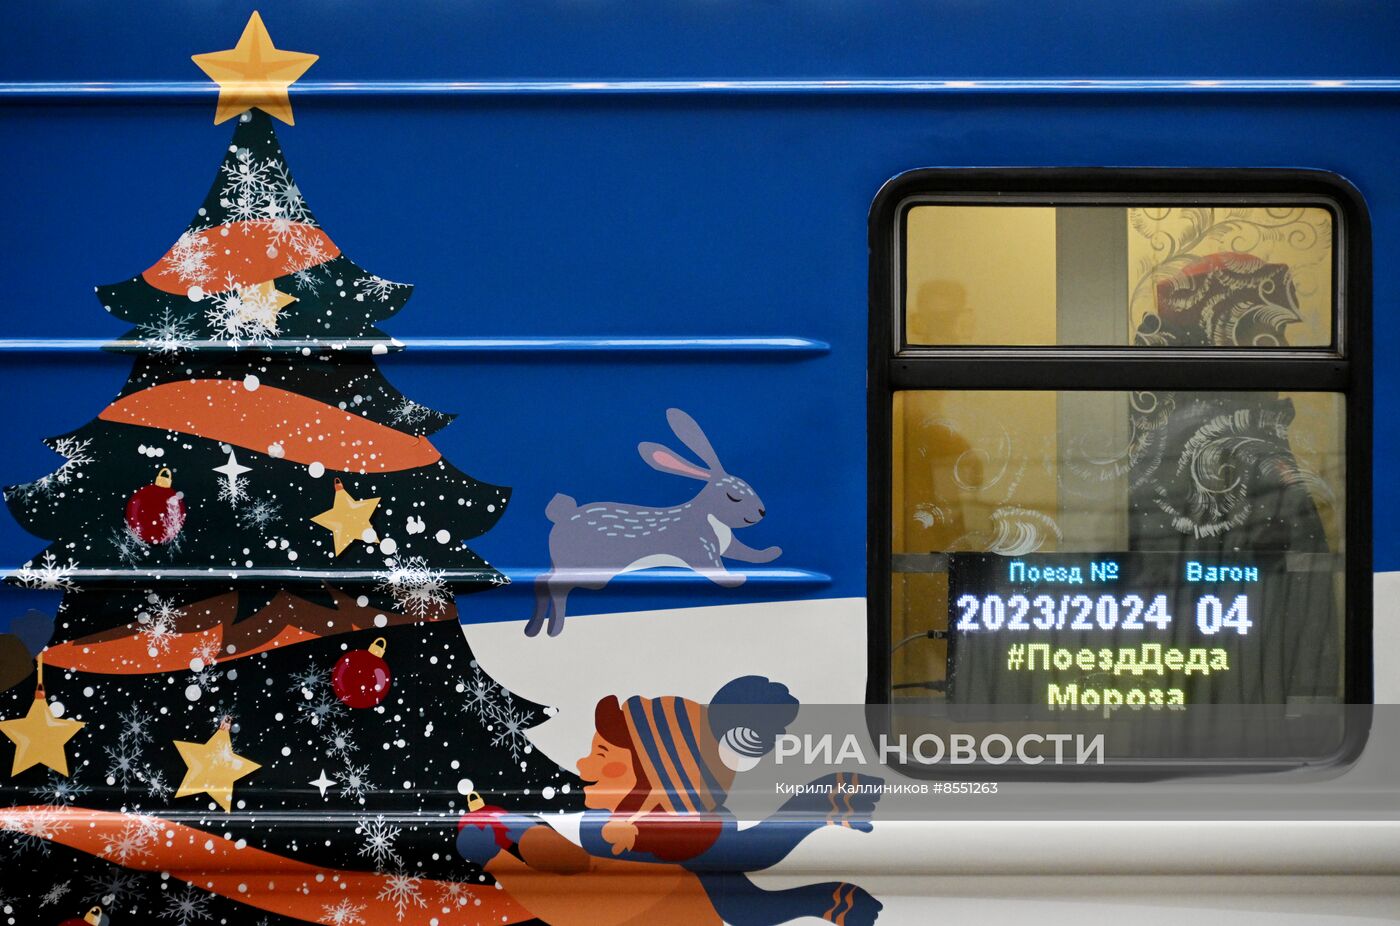 Отправление поезда Деда Мороза с Киевского вокзала